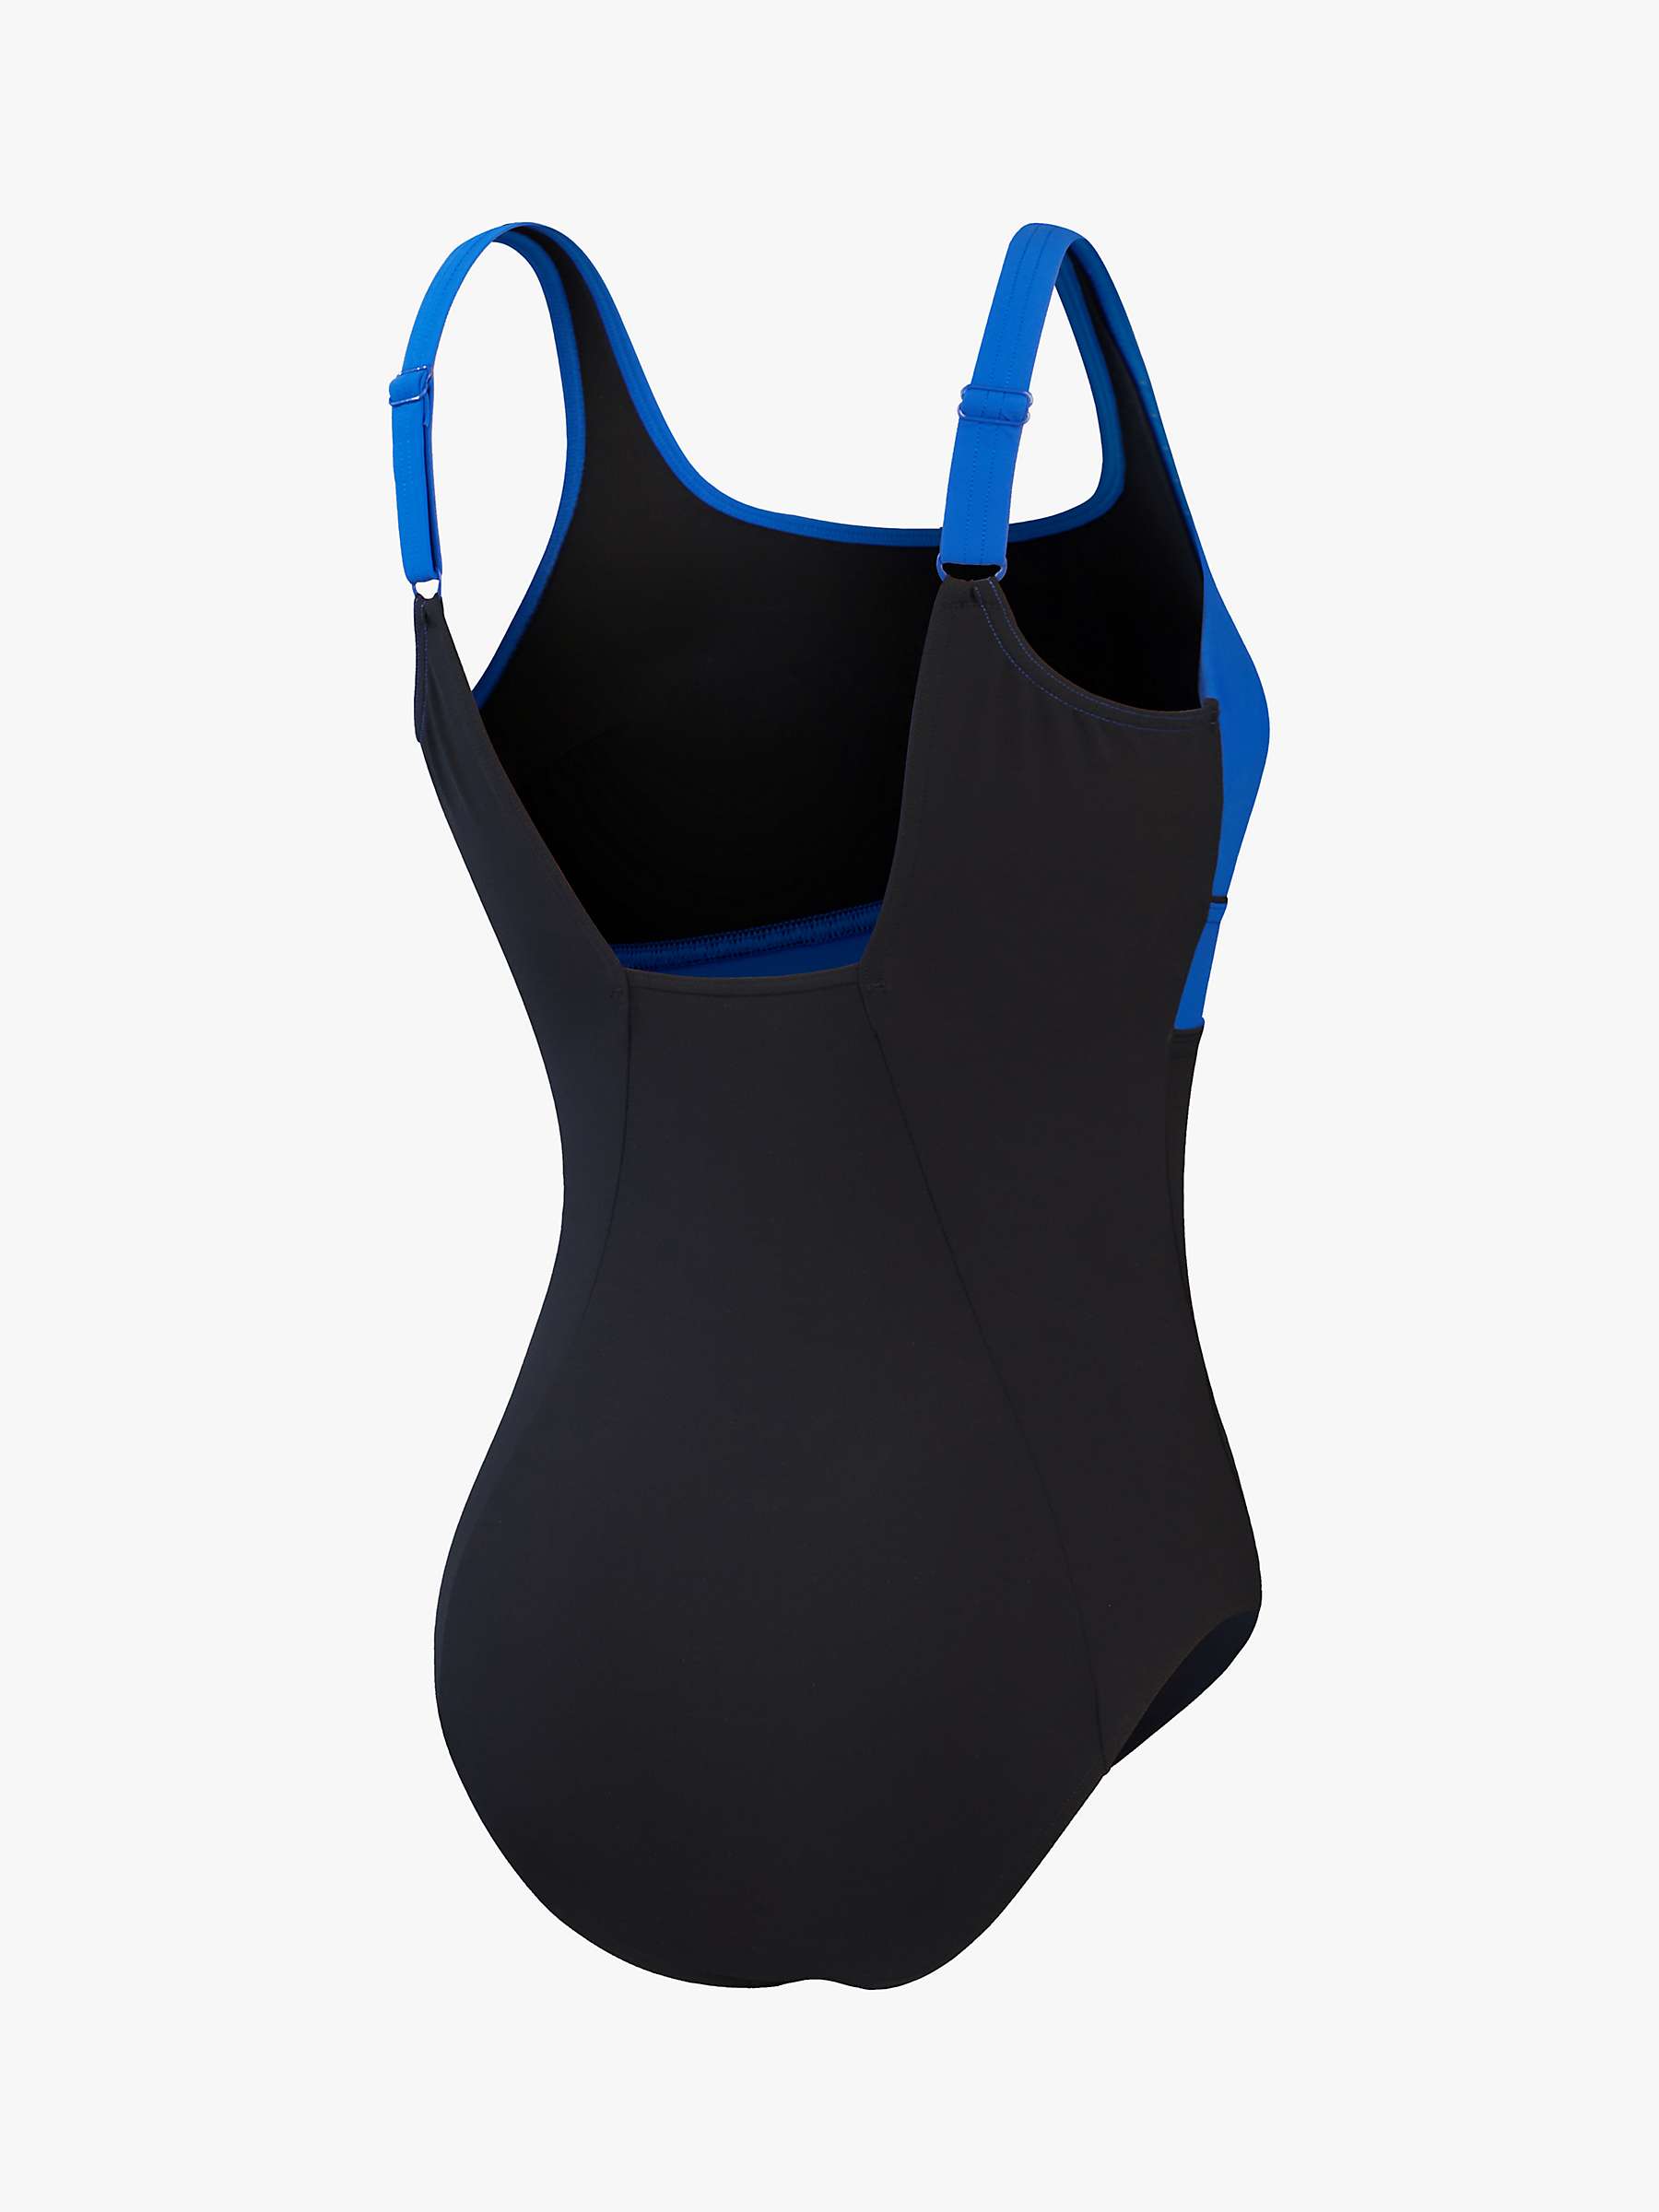 Buy Speedo Women's Shaping ContourEclipse 1 Piece Swimsuit, Black/True Cobalt Online at johnlewis.com